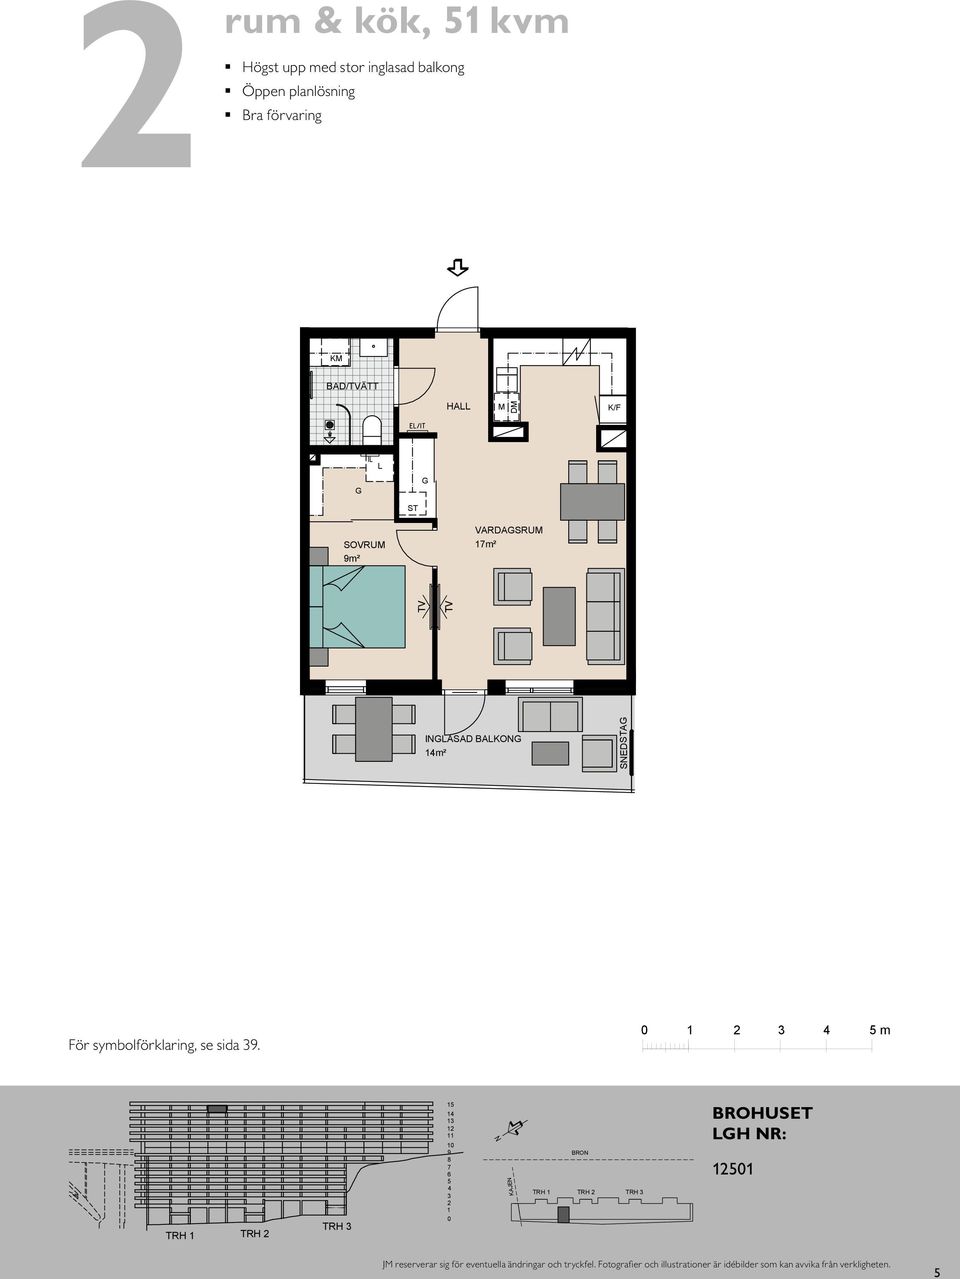 rum och kök, 46 m² Kompakt lägenhet med öppna rumssamband Sovrum med plats  för två Balkong mot gård ENTRÉ ENTRÉ HALL HALL SOVRUM VARDAGSRUM 14m² - PDF  Free Download